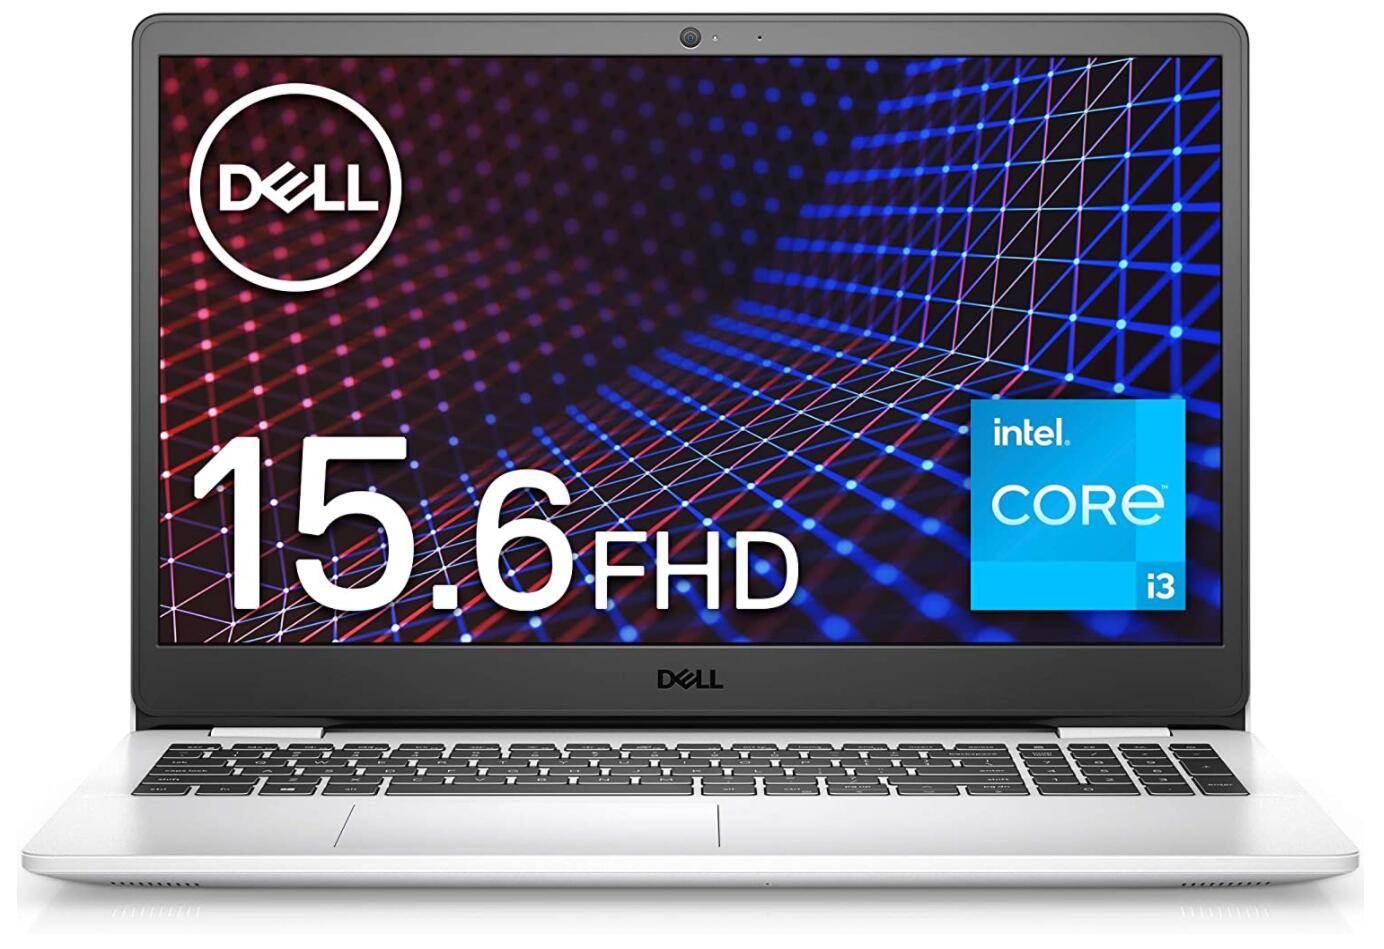 Dell ノートパソコン Inspiron 15 3501 ホワイト Win10/15.6FHD/Core i3-1115G4/8GB/256GB/Webカメラ/無線LAN NI335A-AWLW 【Windows 11 無料アップグレード対応】